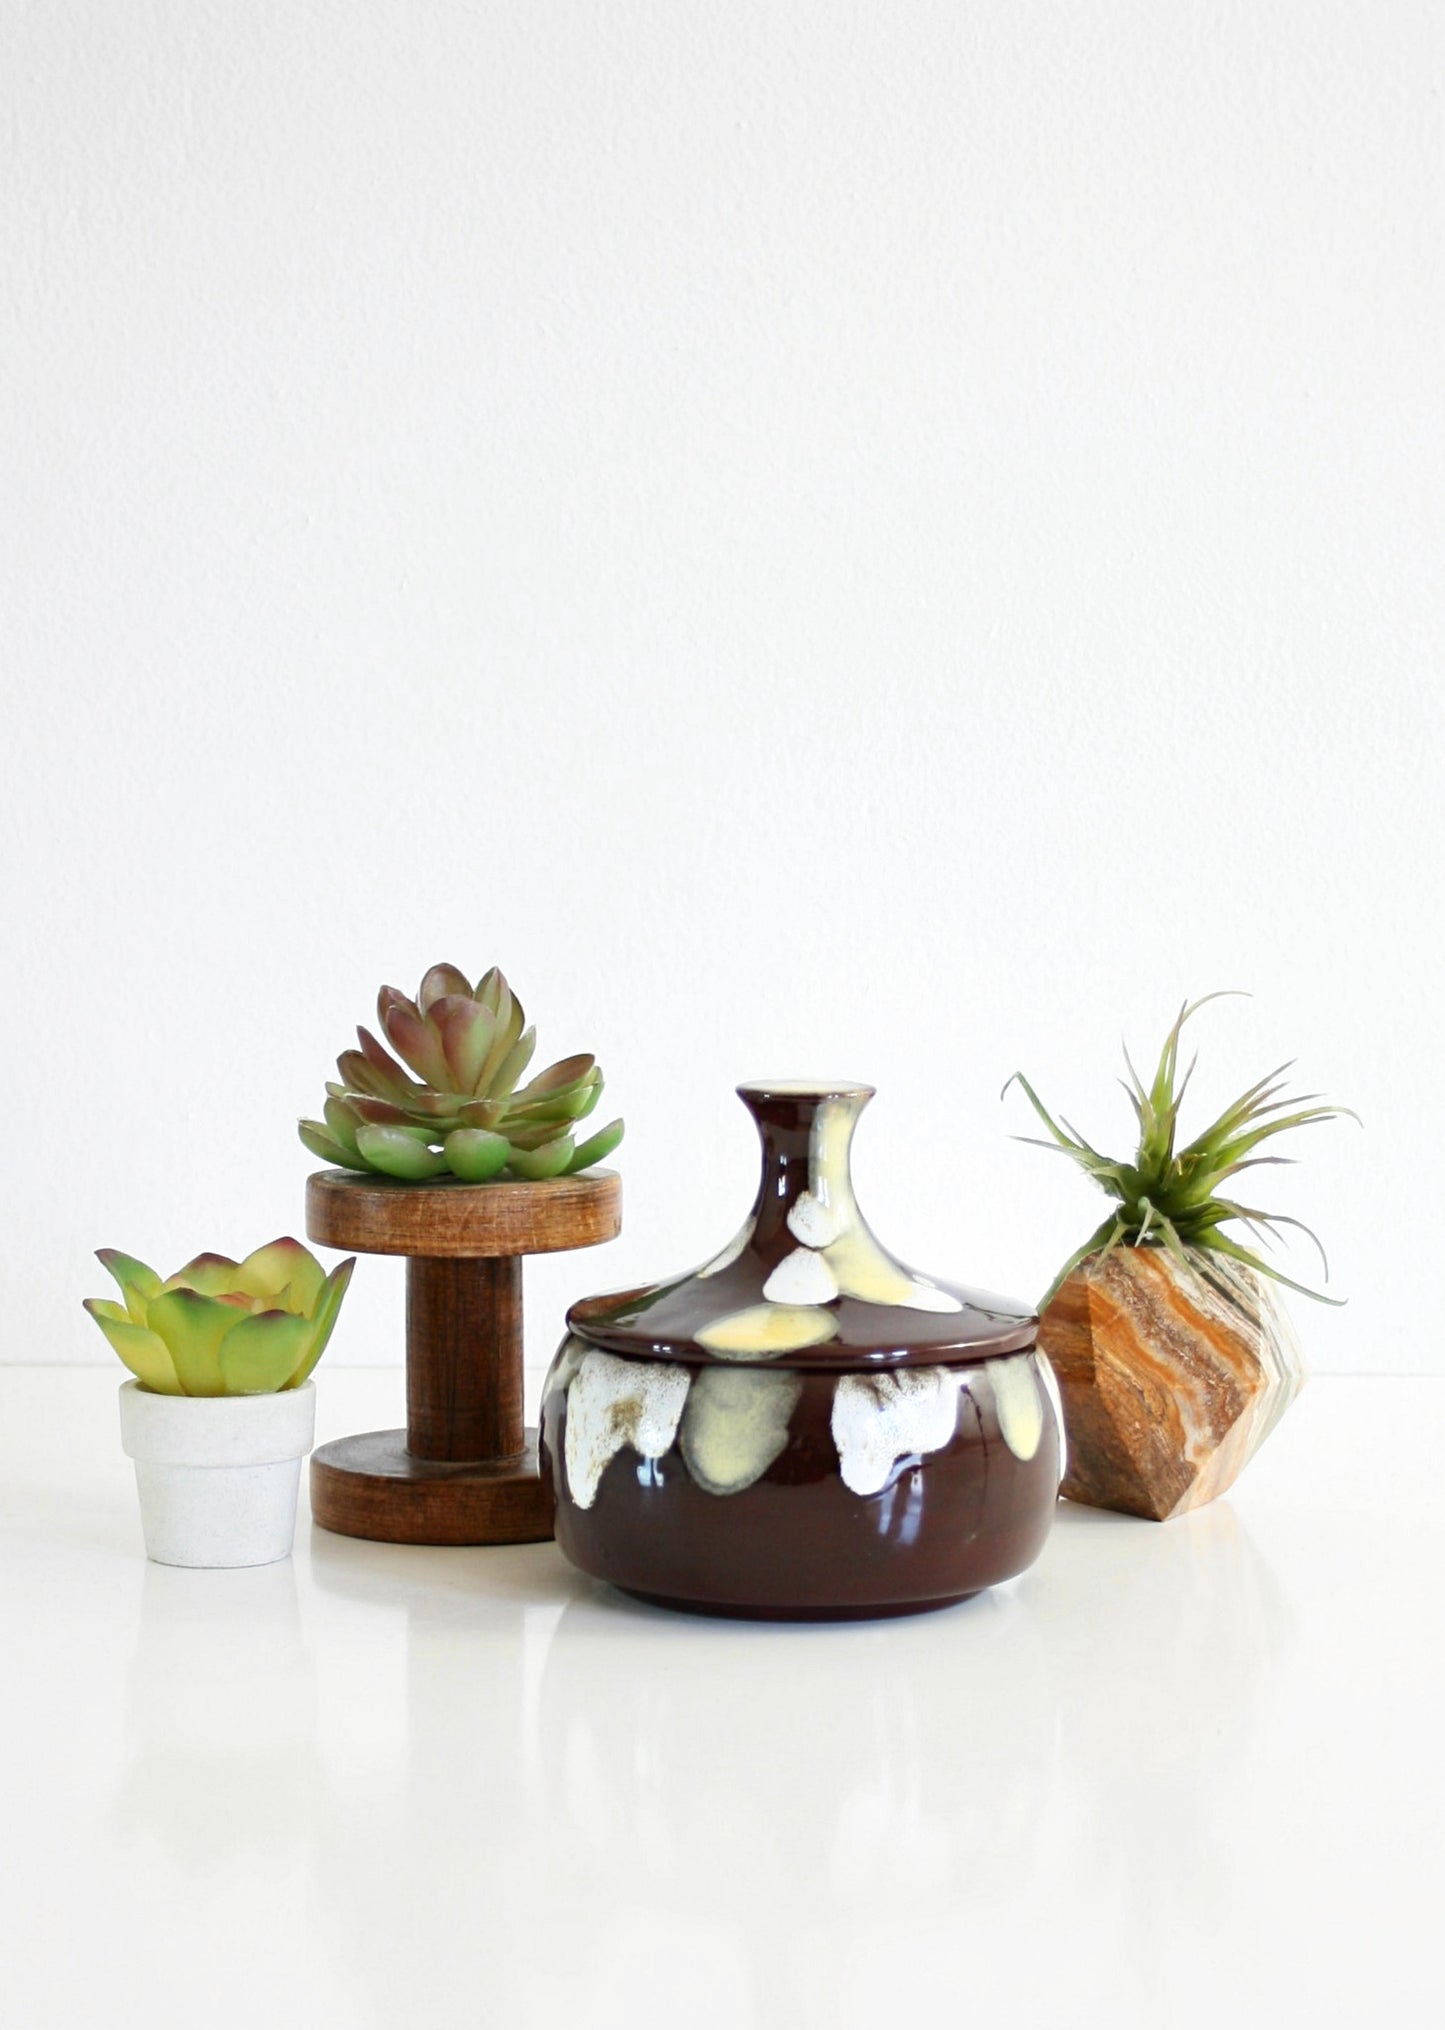 SOLD - Mid Century Modern Brown Ceramic Drip Glaze Trinket Jar